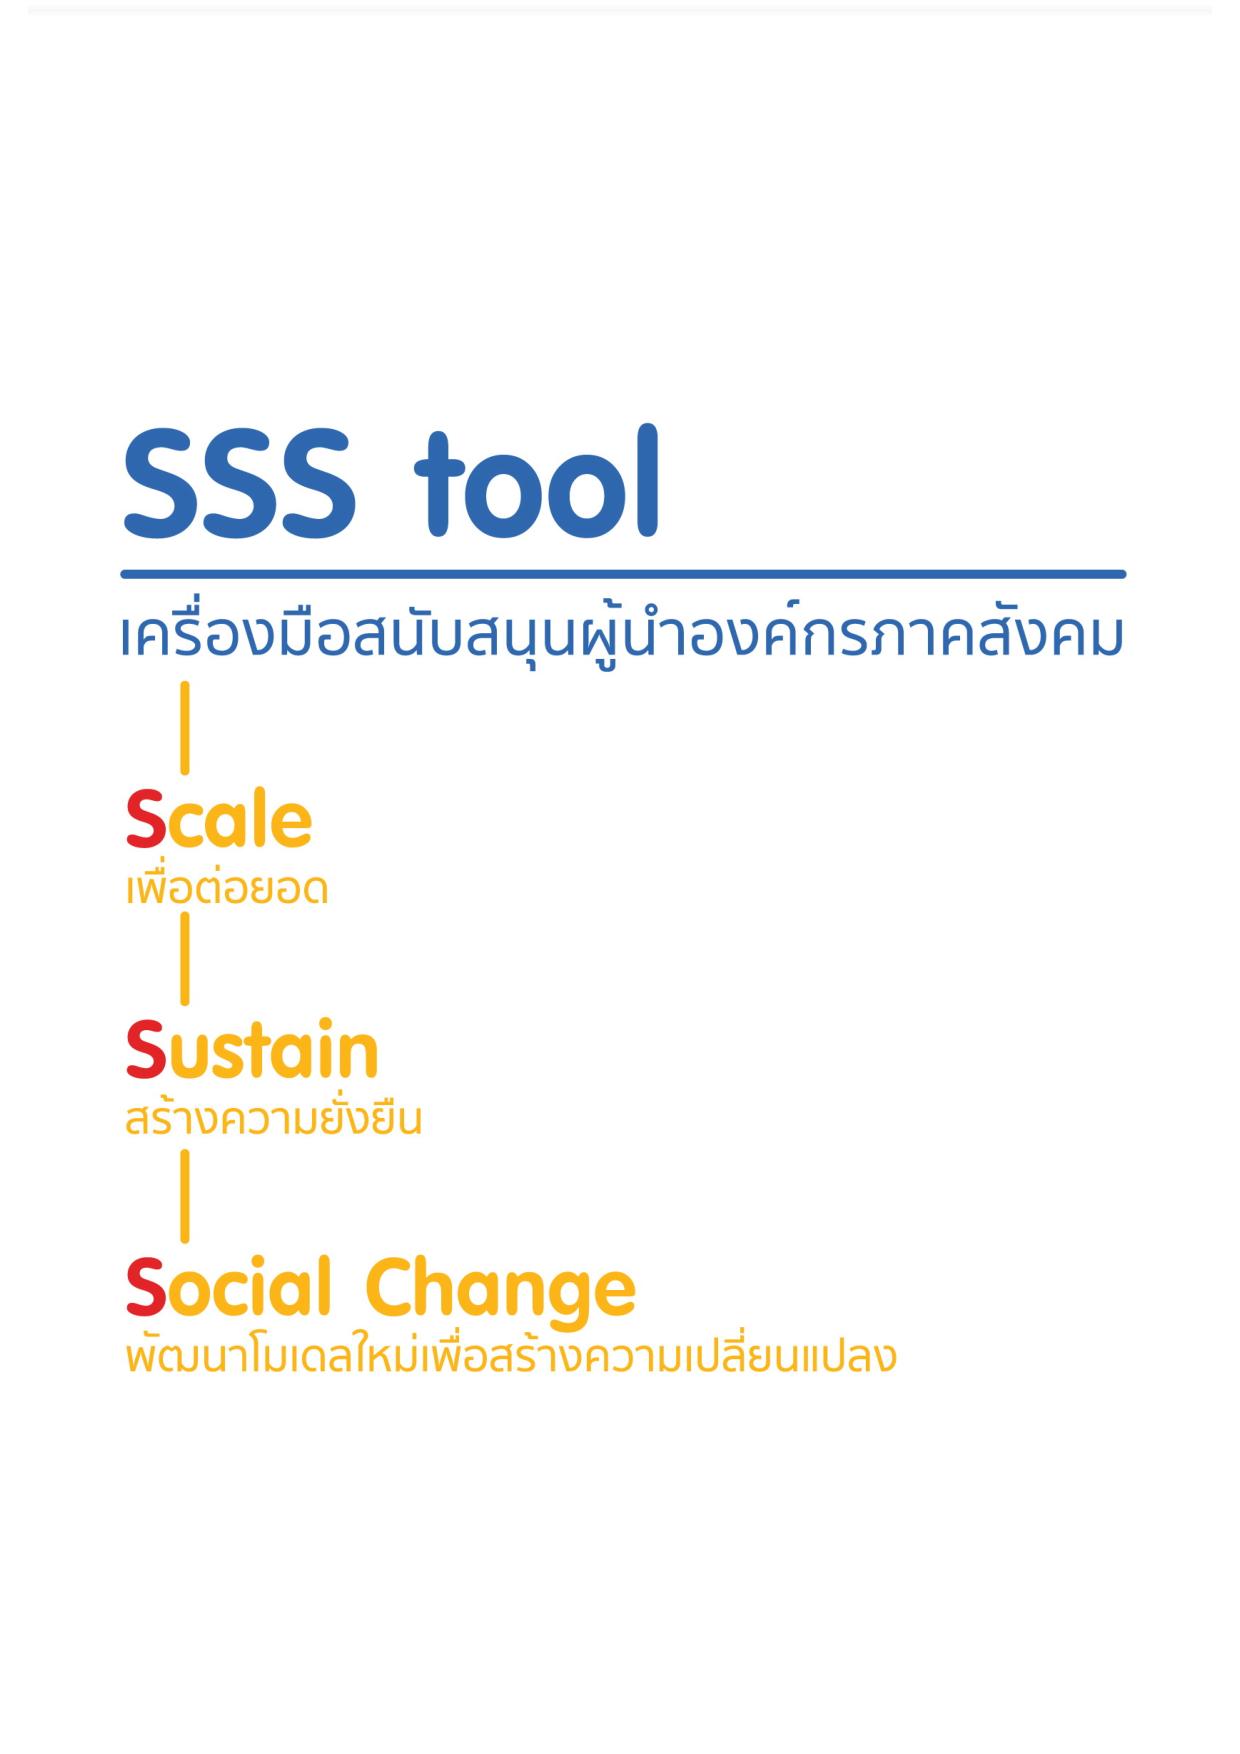 เครื่องมือสนับสนุนผู้นำองค์กรภาคสังคม (SSS Tool)